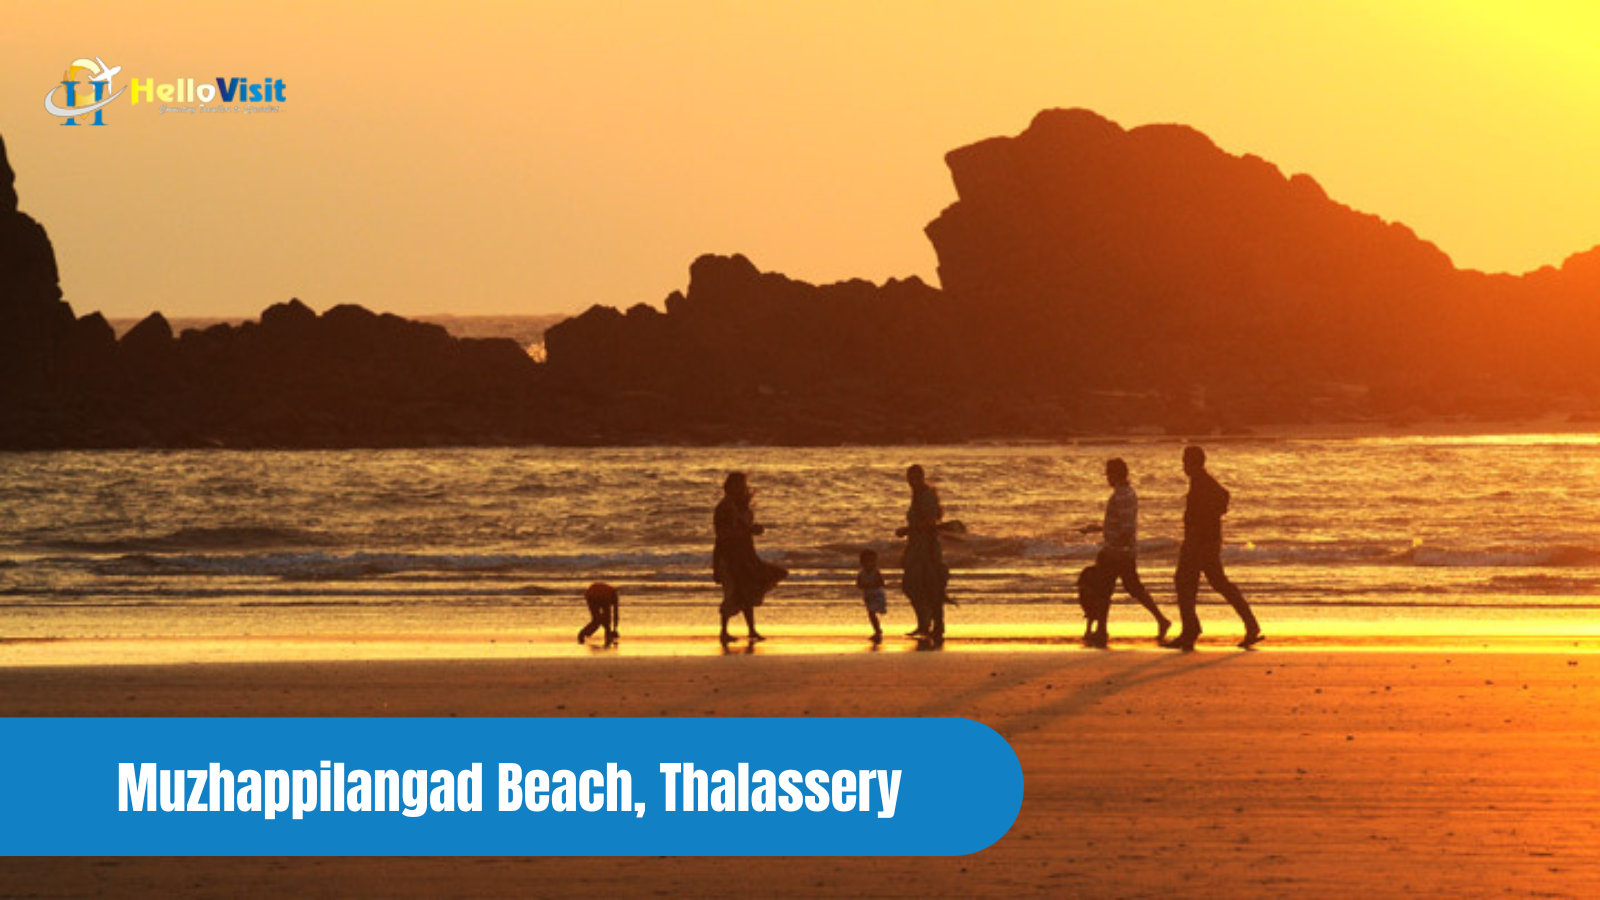 Muzhappilangad Beach, Thalassery